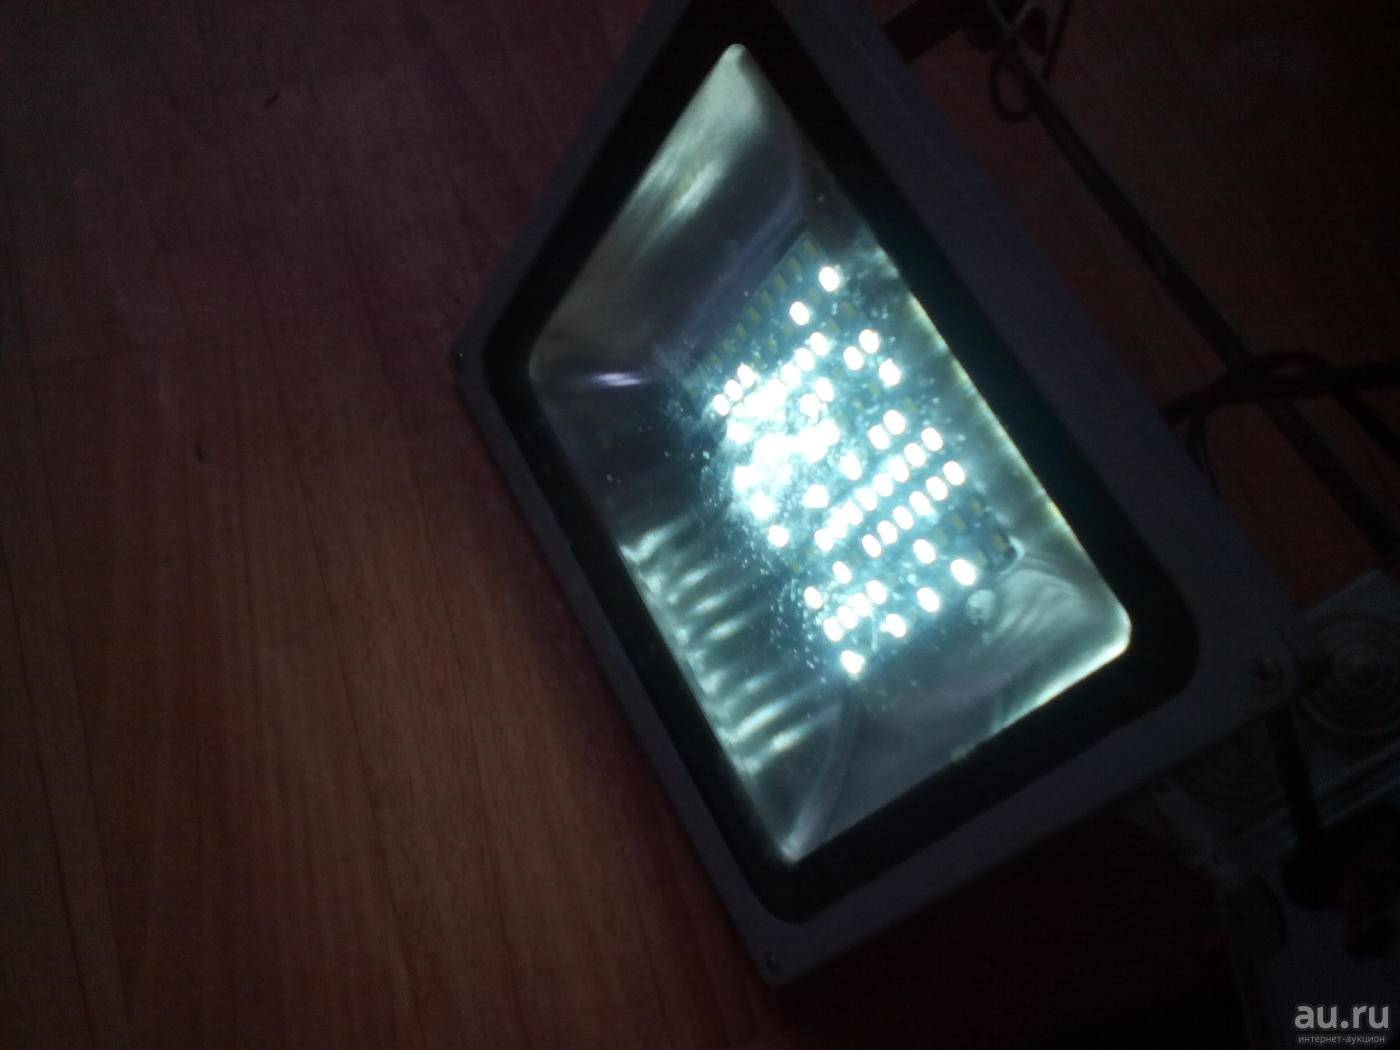 Светодиодный прожектор стал плохо светить - что делать